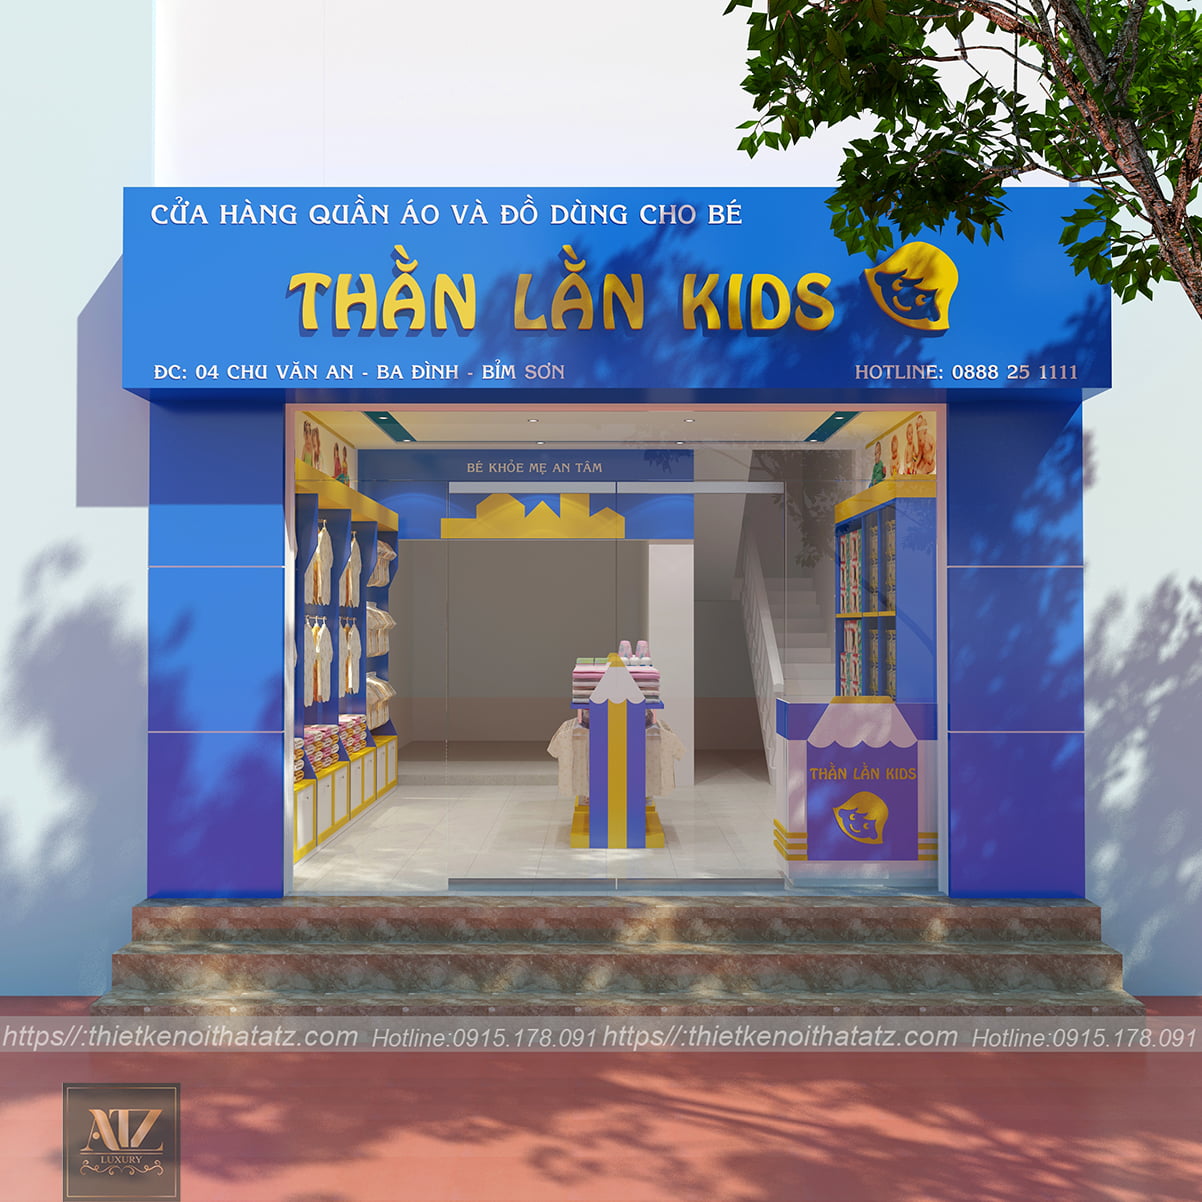 Thiết kế nội thất shop mẹ và bé tại Bỉm Sơn Thanh Hóa cho Chị Hạnh